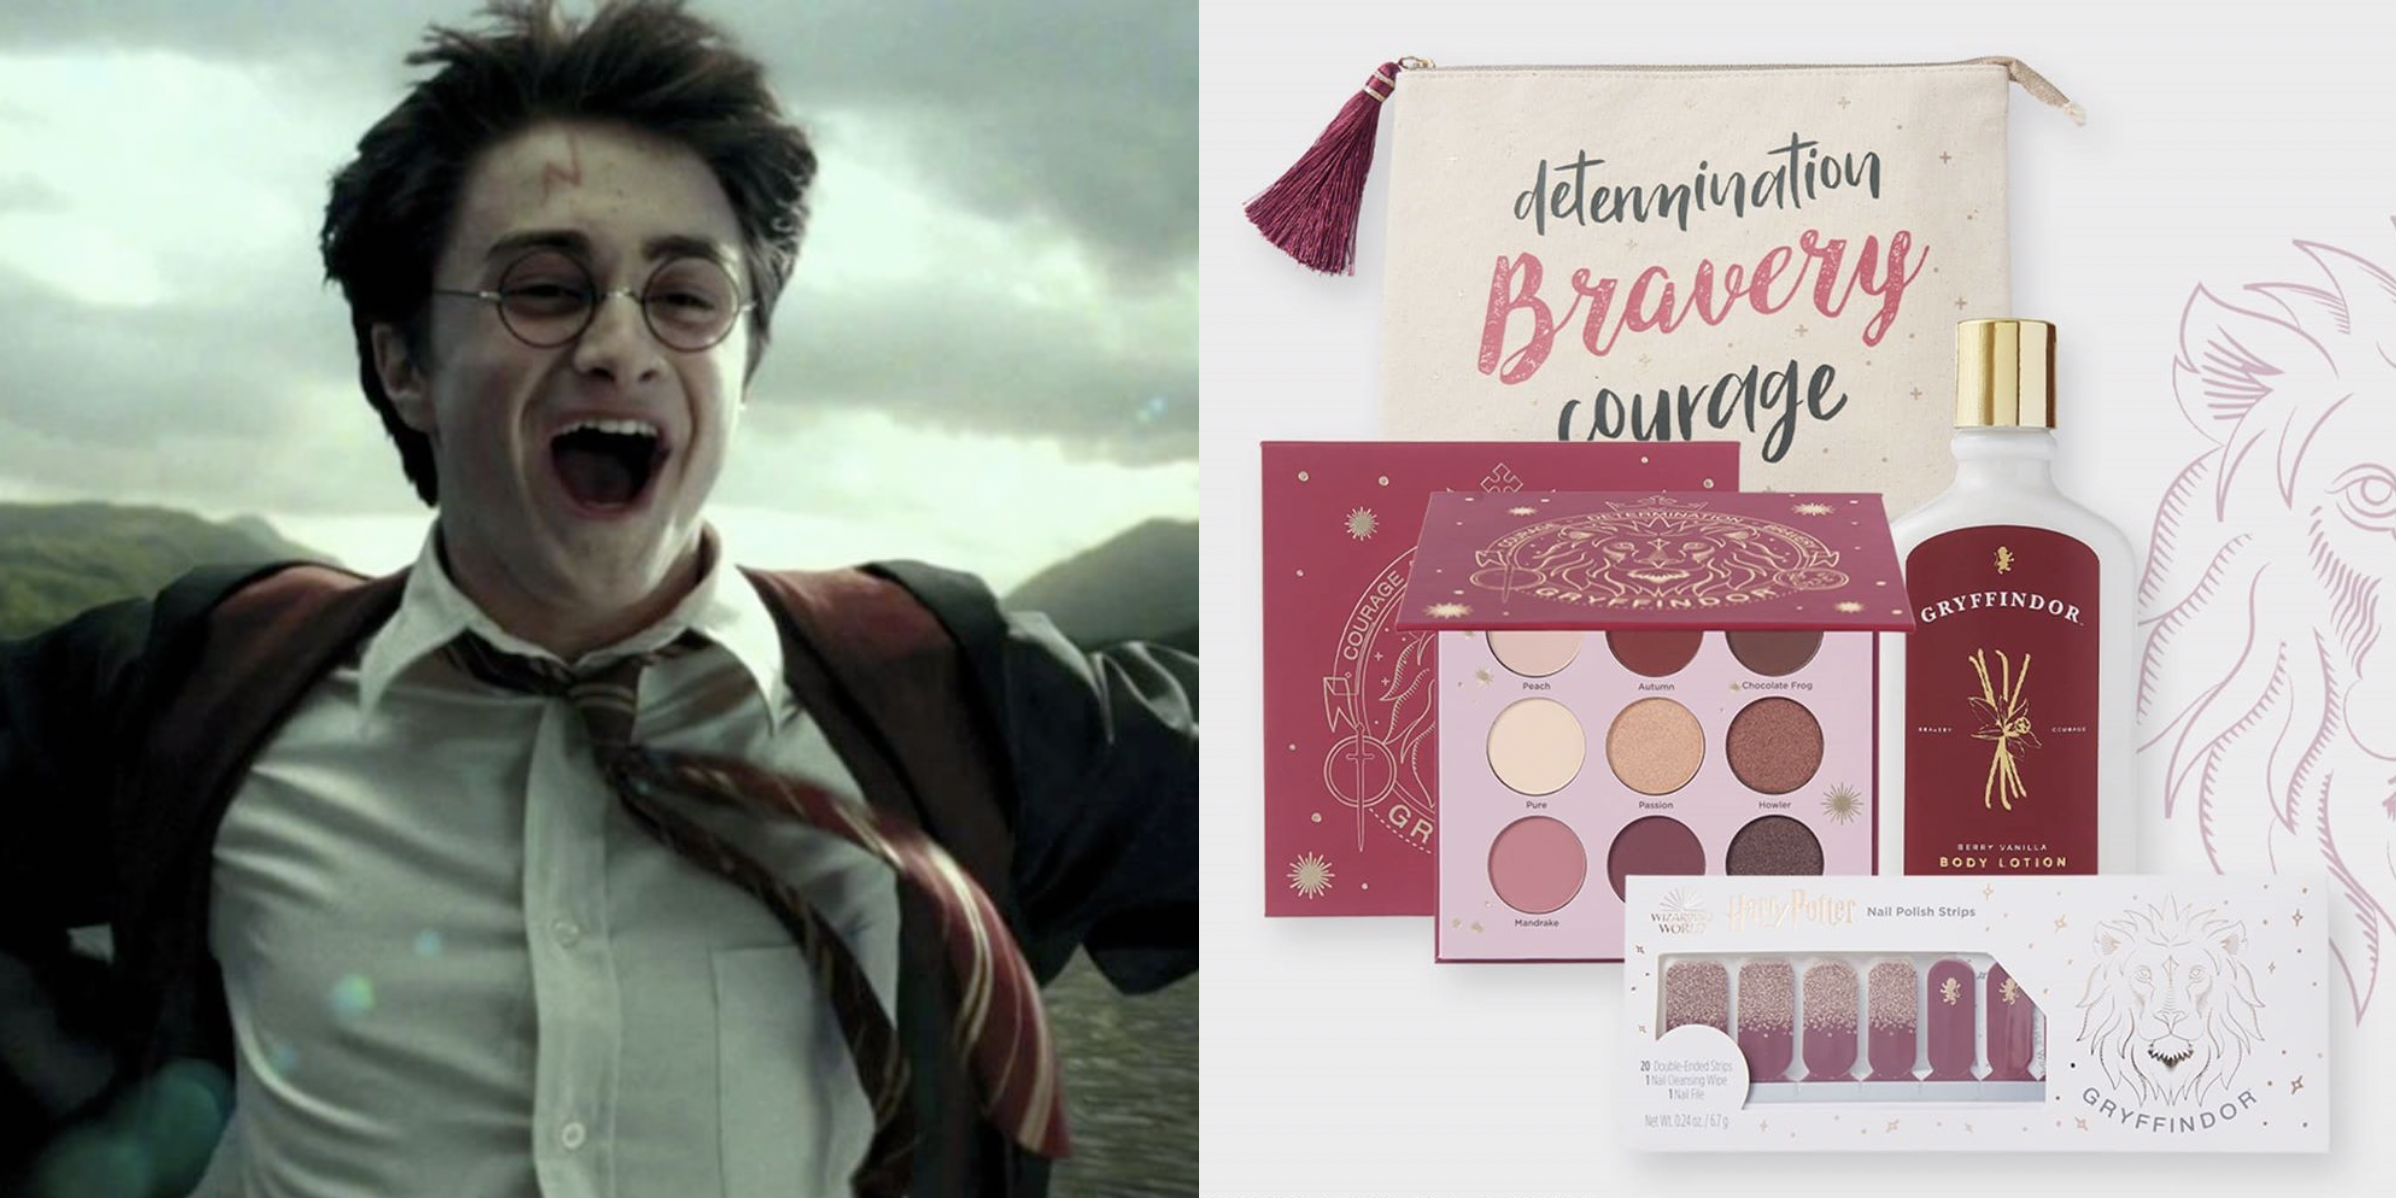 Ulta Beauty acaba de lanzar una nueva colección de maquillaje "Harry Potter" inspirada en cada casa